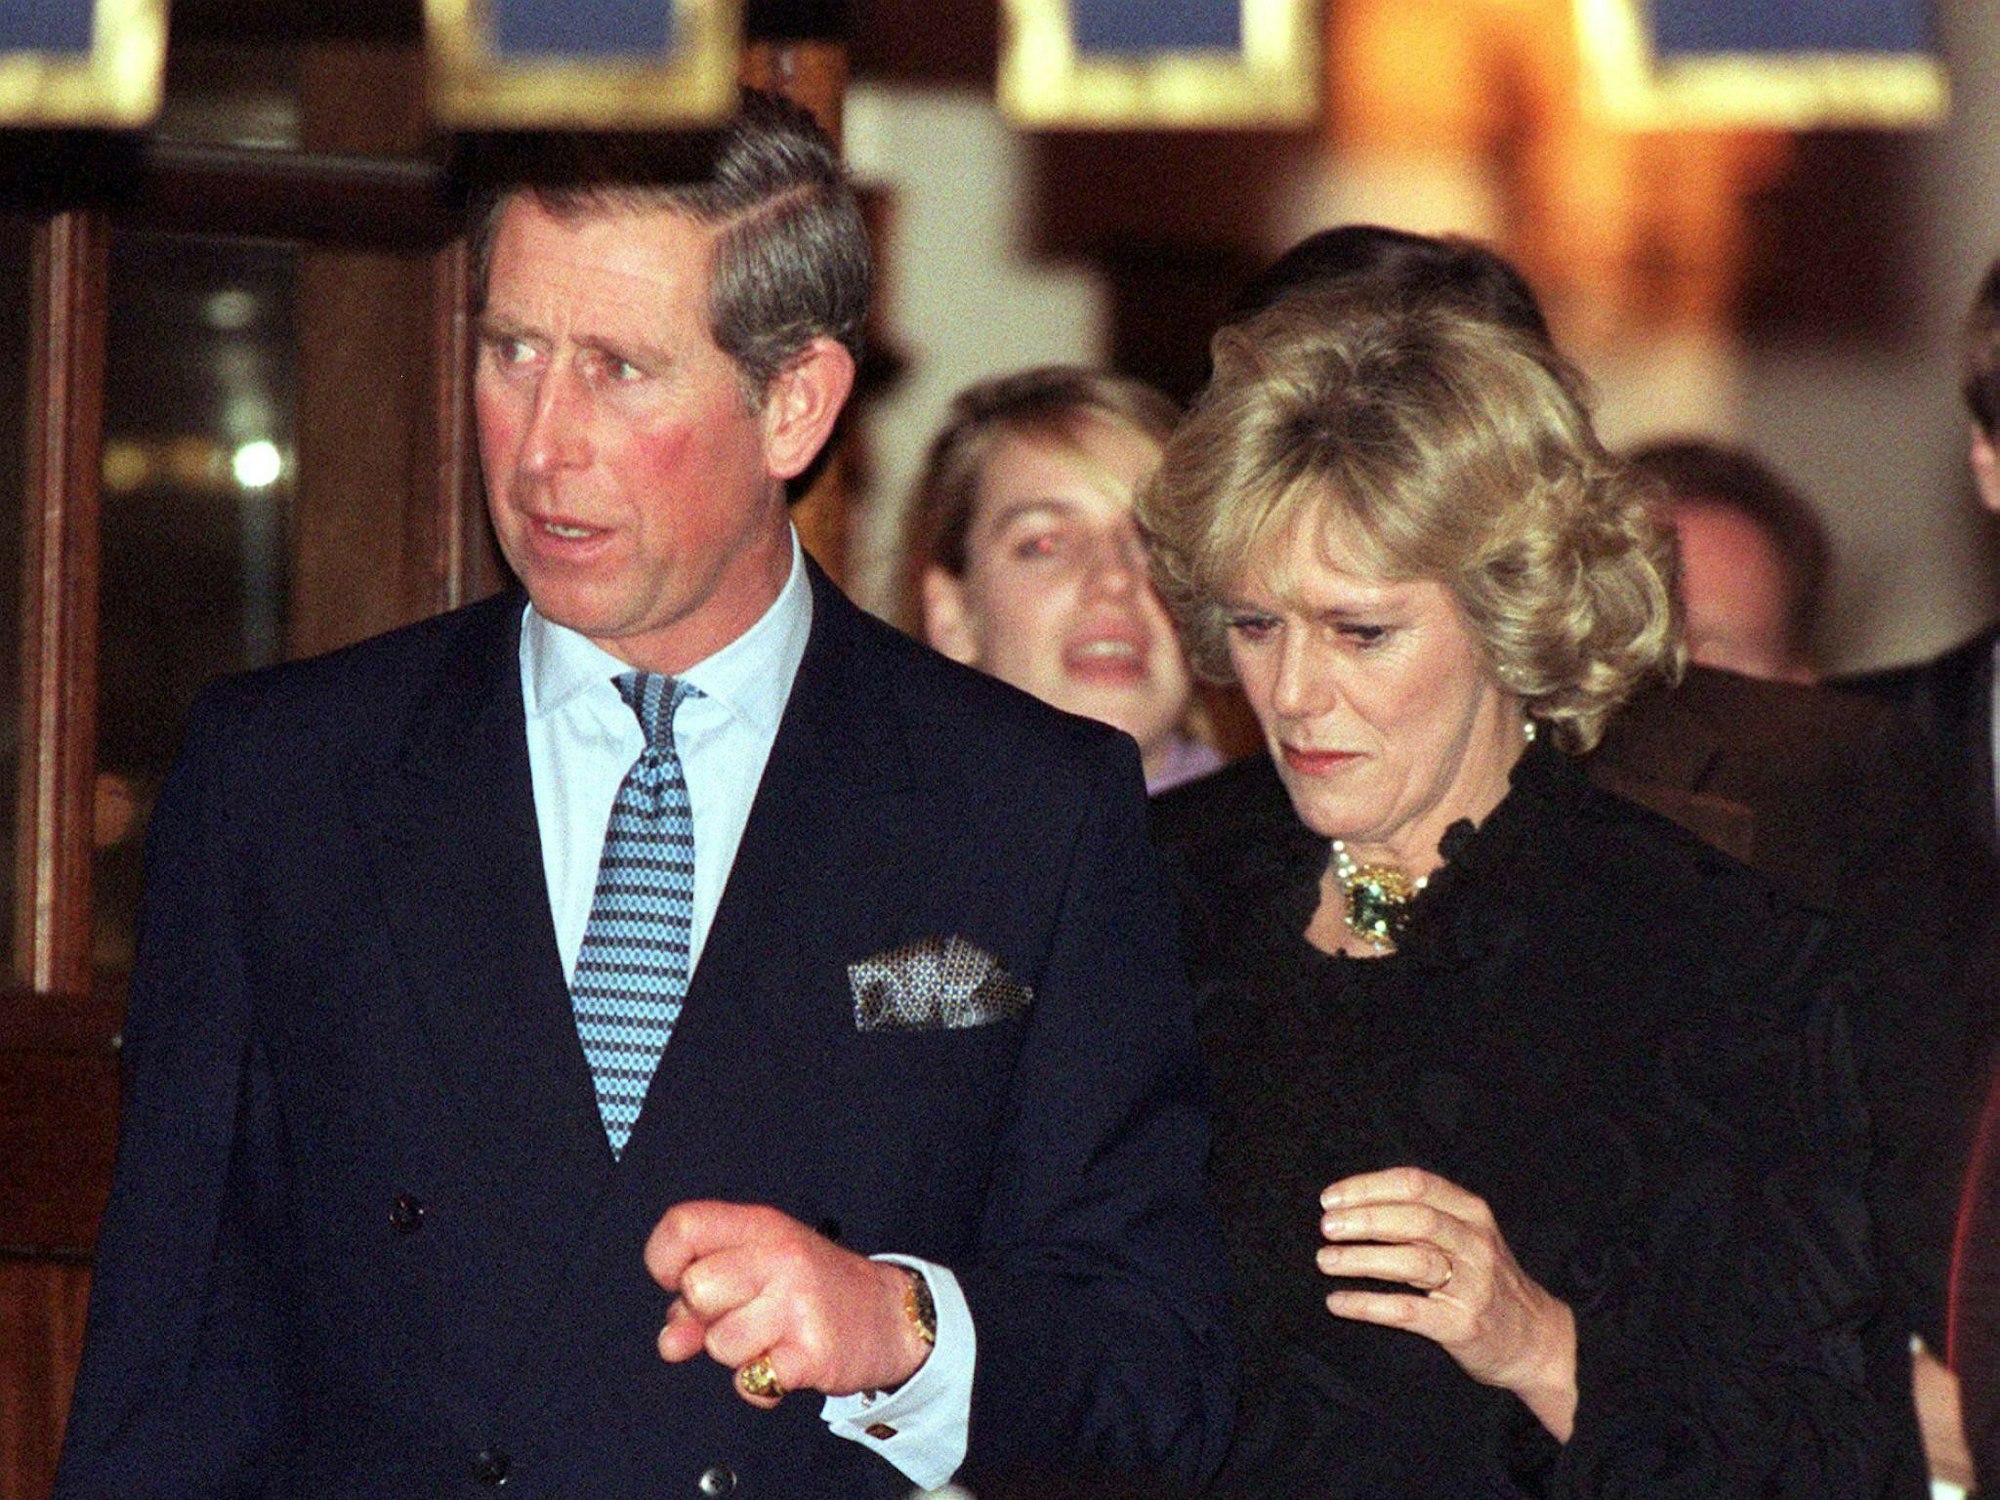 König Charles III. und Queen Camilla werden am 28. Januar 1999 erstmals zusammen fotografiert: beim Verlassen des Ritz-Hotels in London.